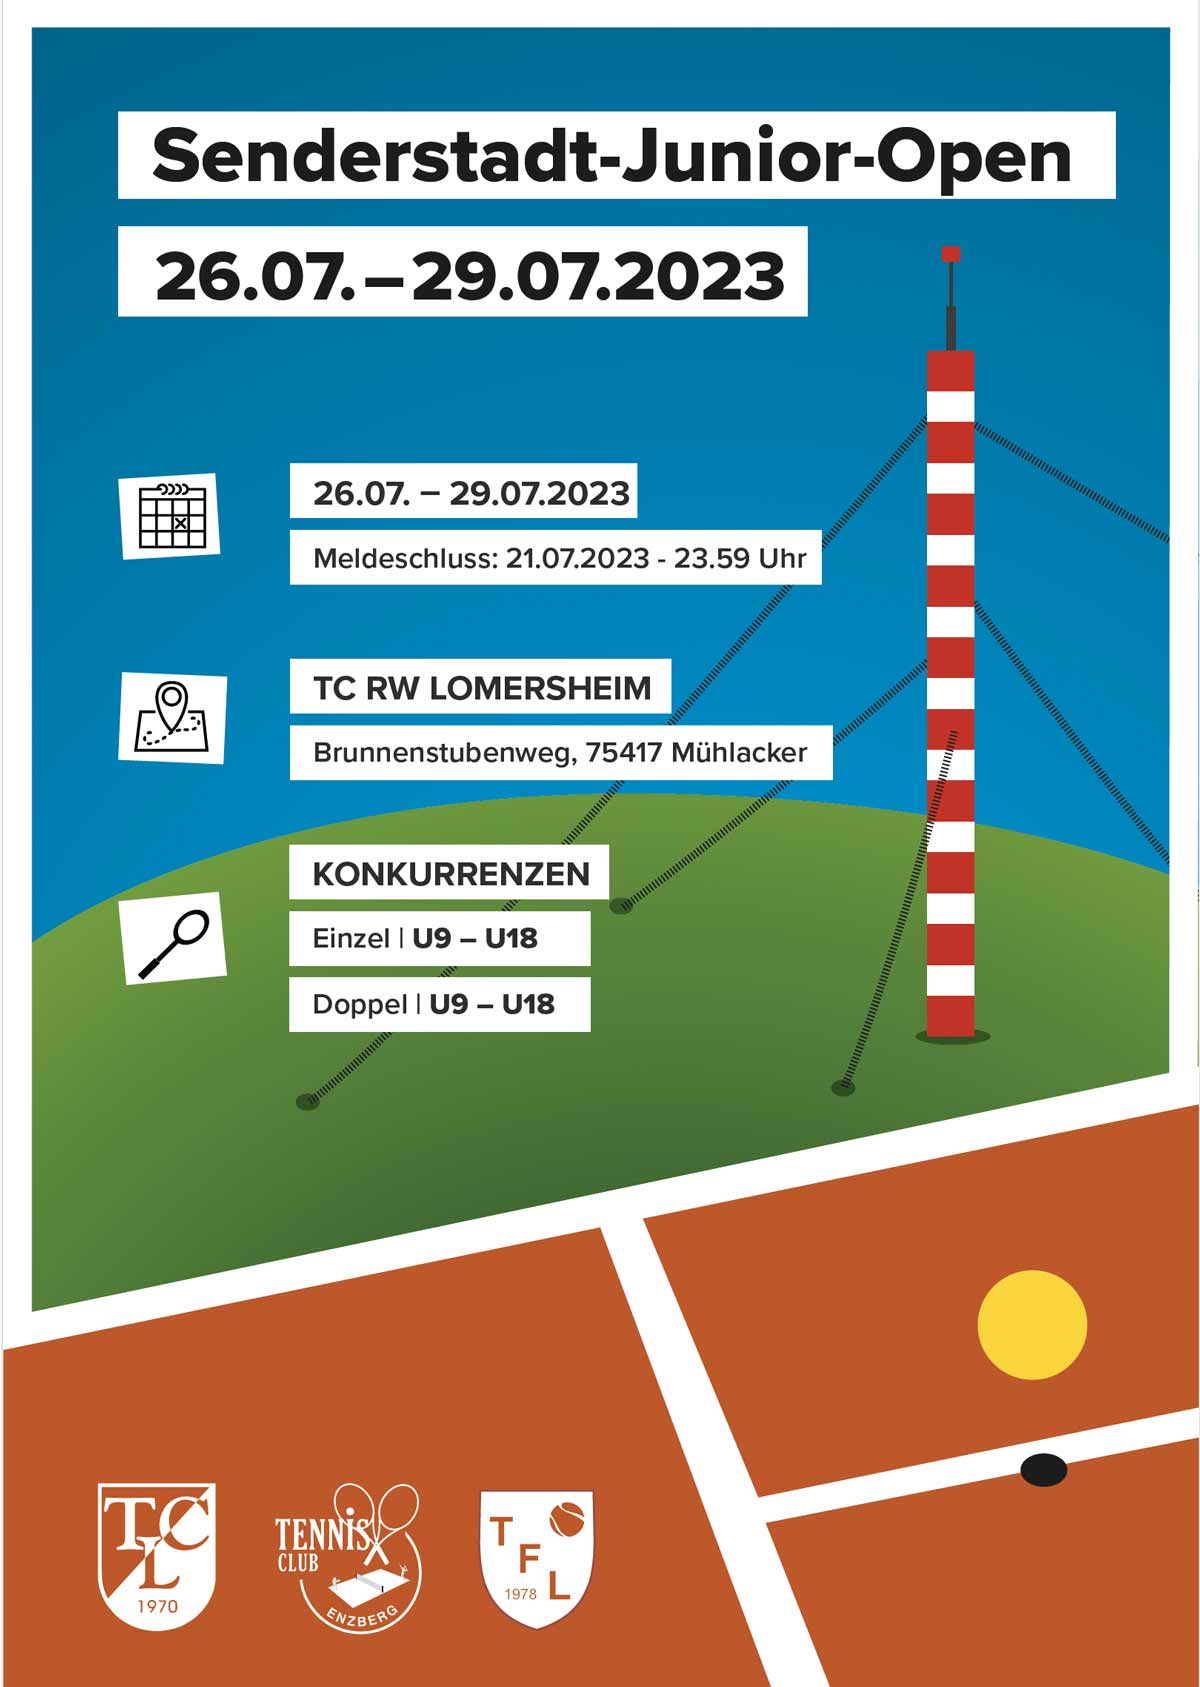 Senderstadt-Junior-Open Plakat